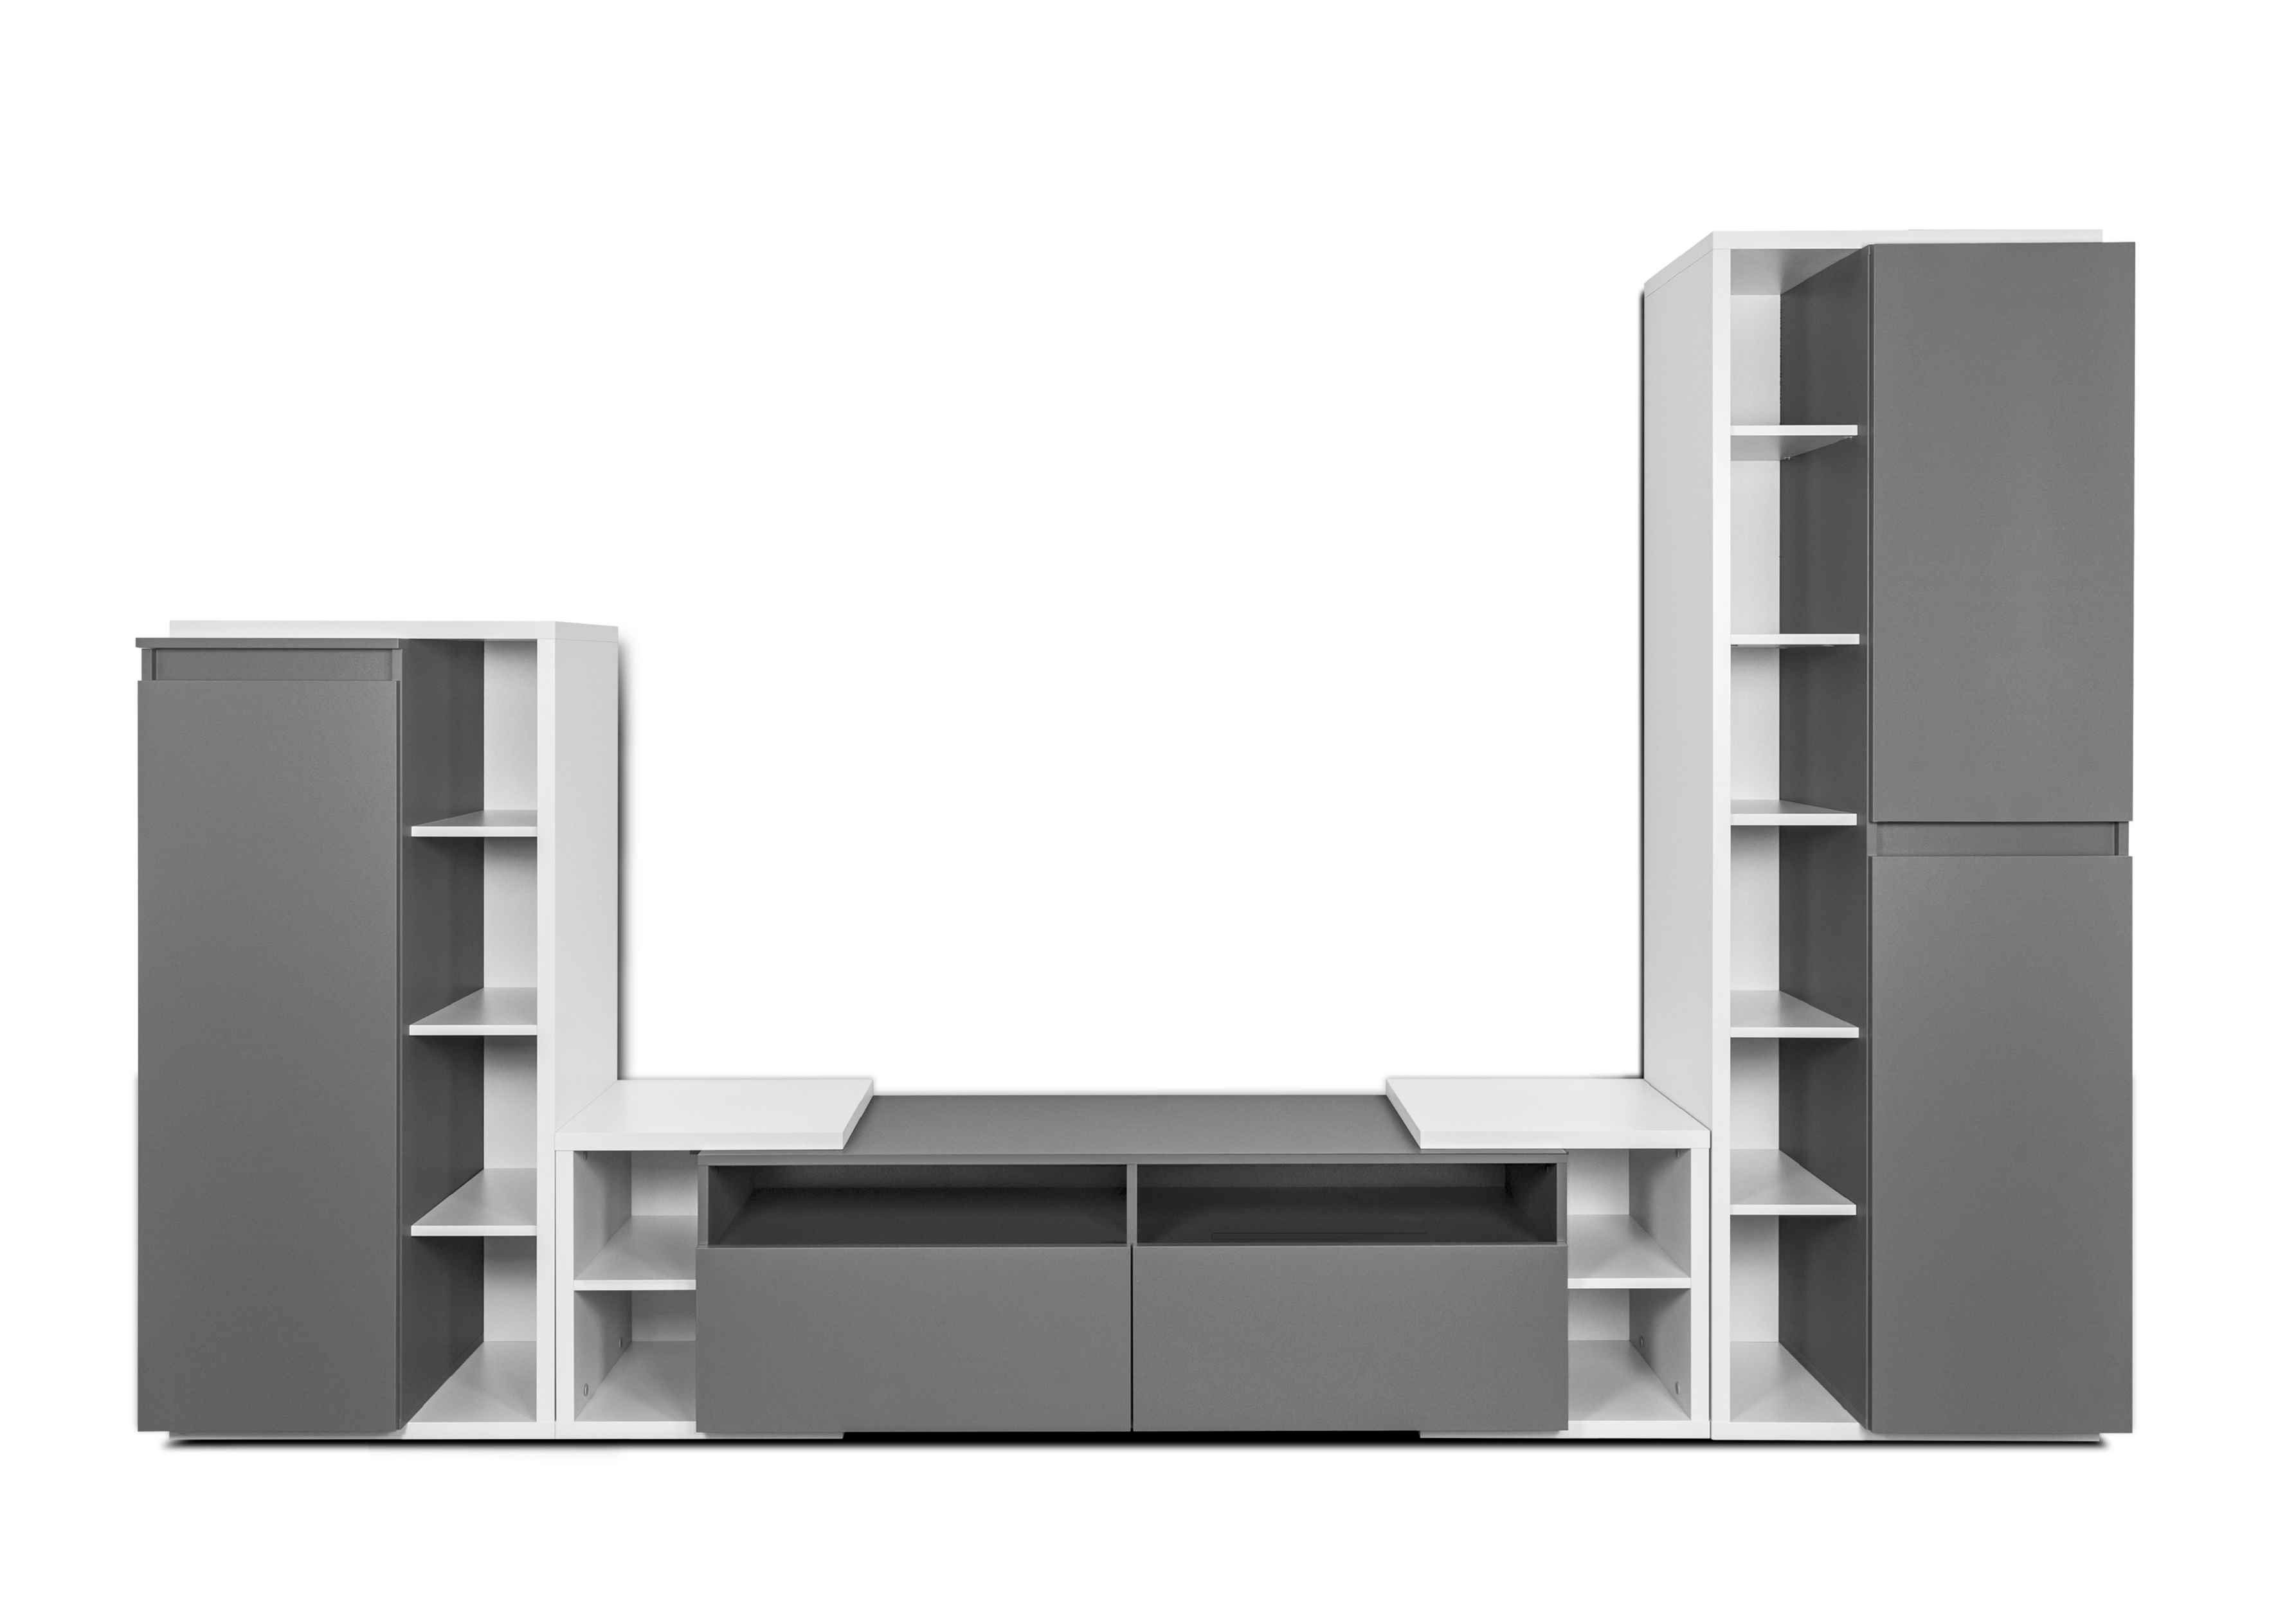 Hellgrau/Anthrazit, breit Wohnwand Furnix 306 mit cm NATJA TV-Board, Gesamt 3-teilg Hochschrank, Highboard, Mediawand